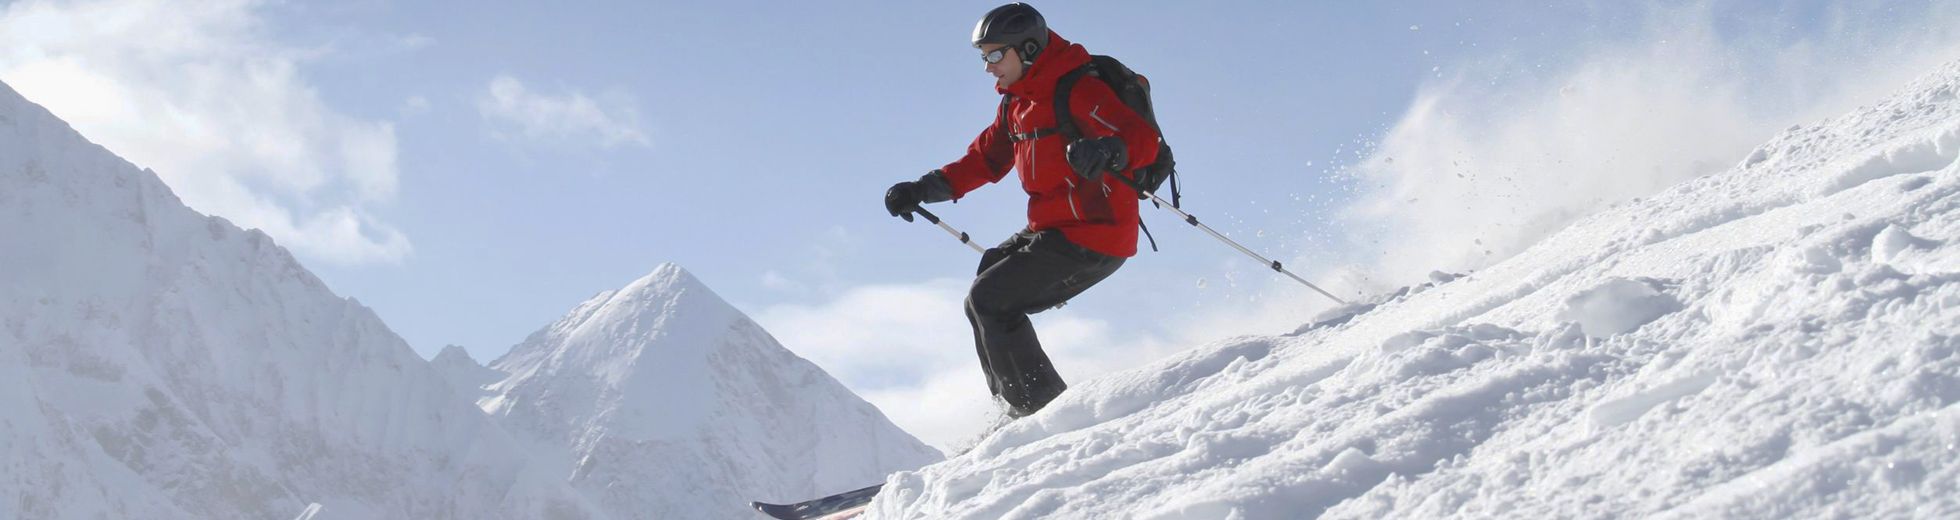 雪山での滑走経路をスマホに記録できる Snoway 利用者向け情報 みちびき 準天頂衛星システム Qzss 公式サイト 内閣府